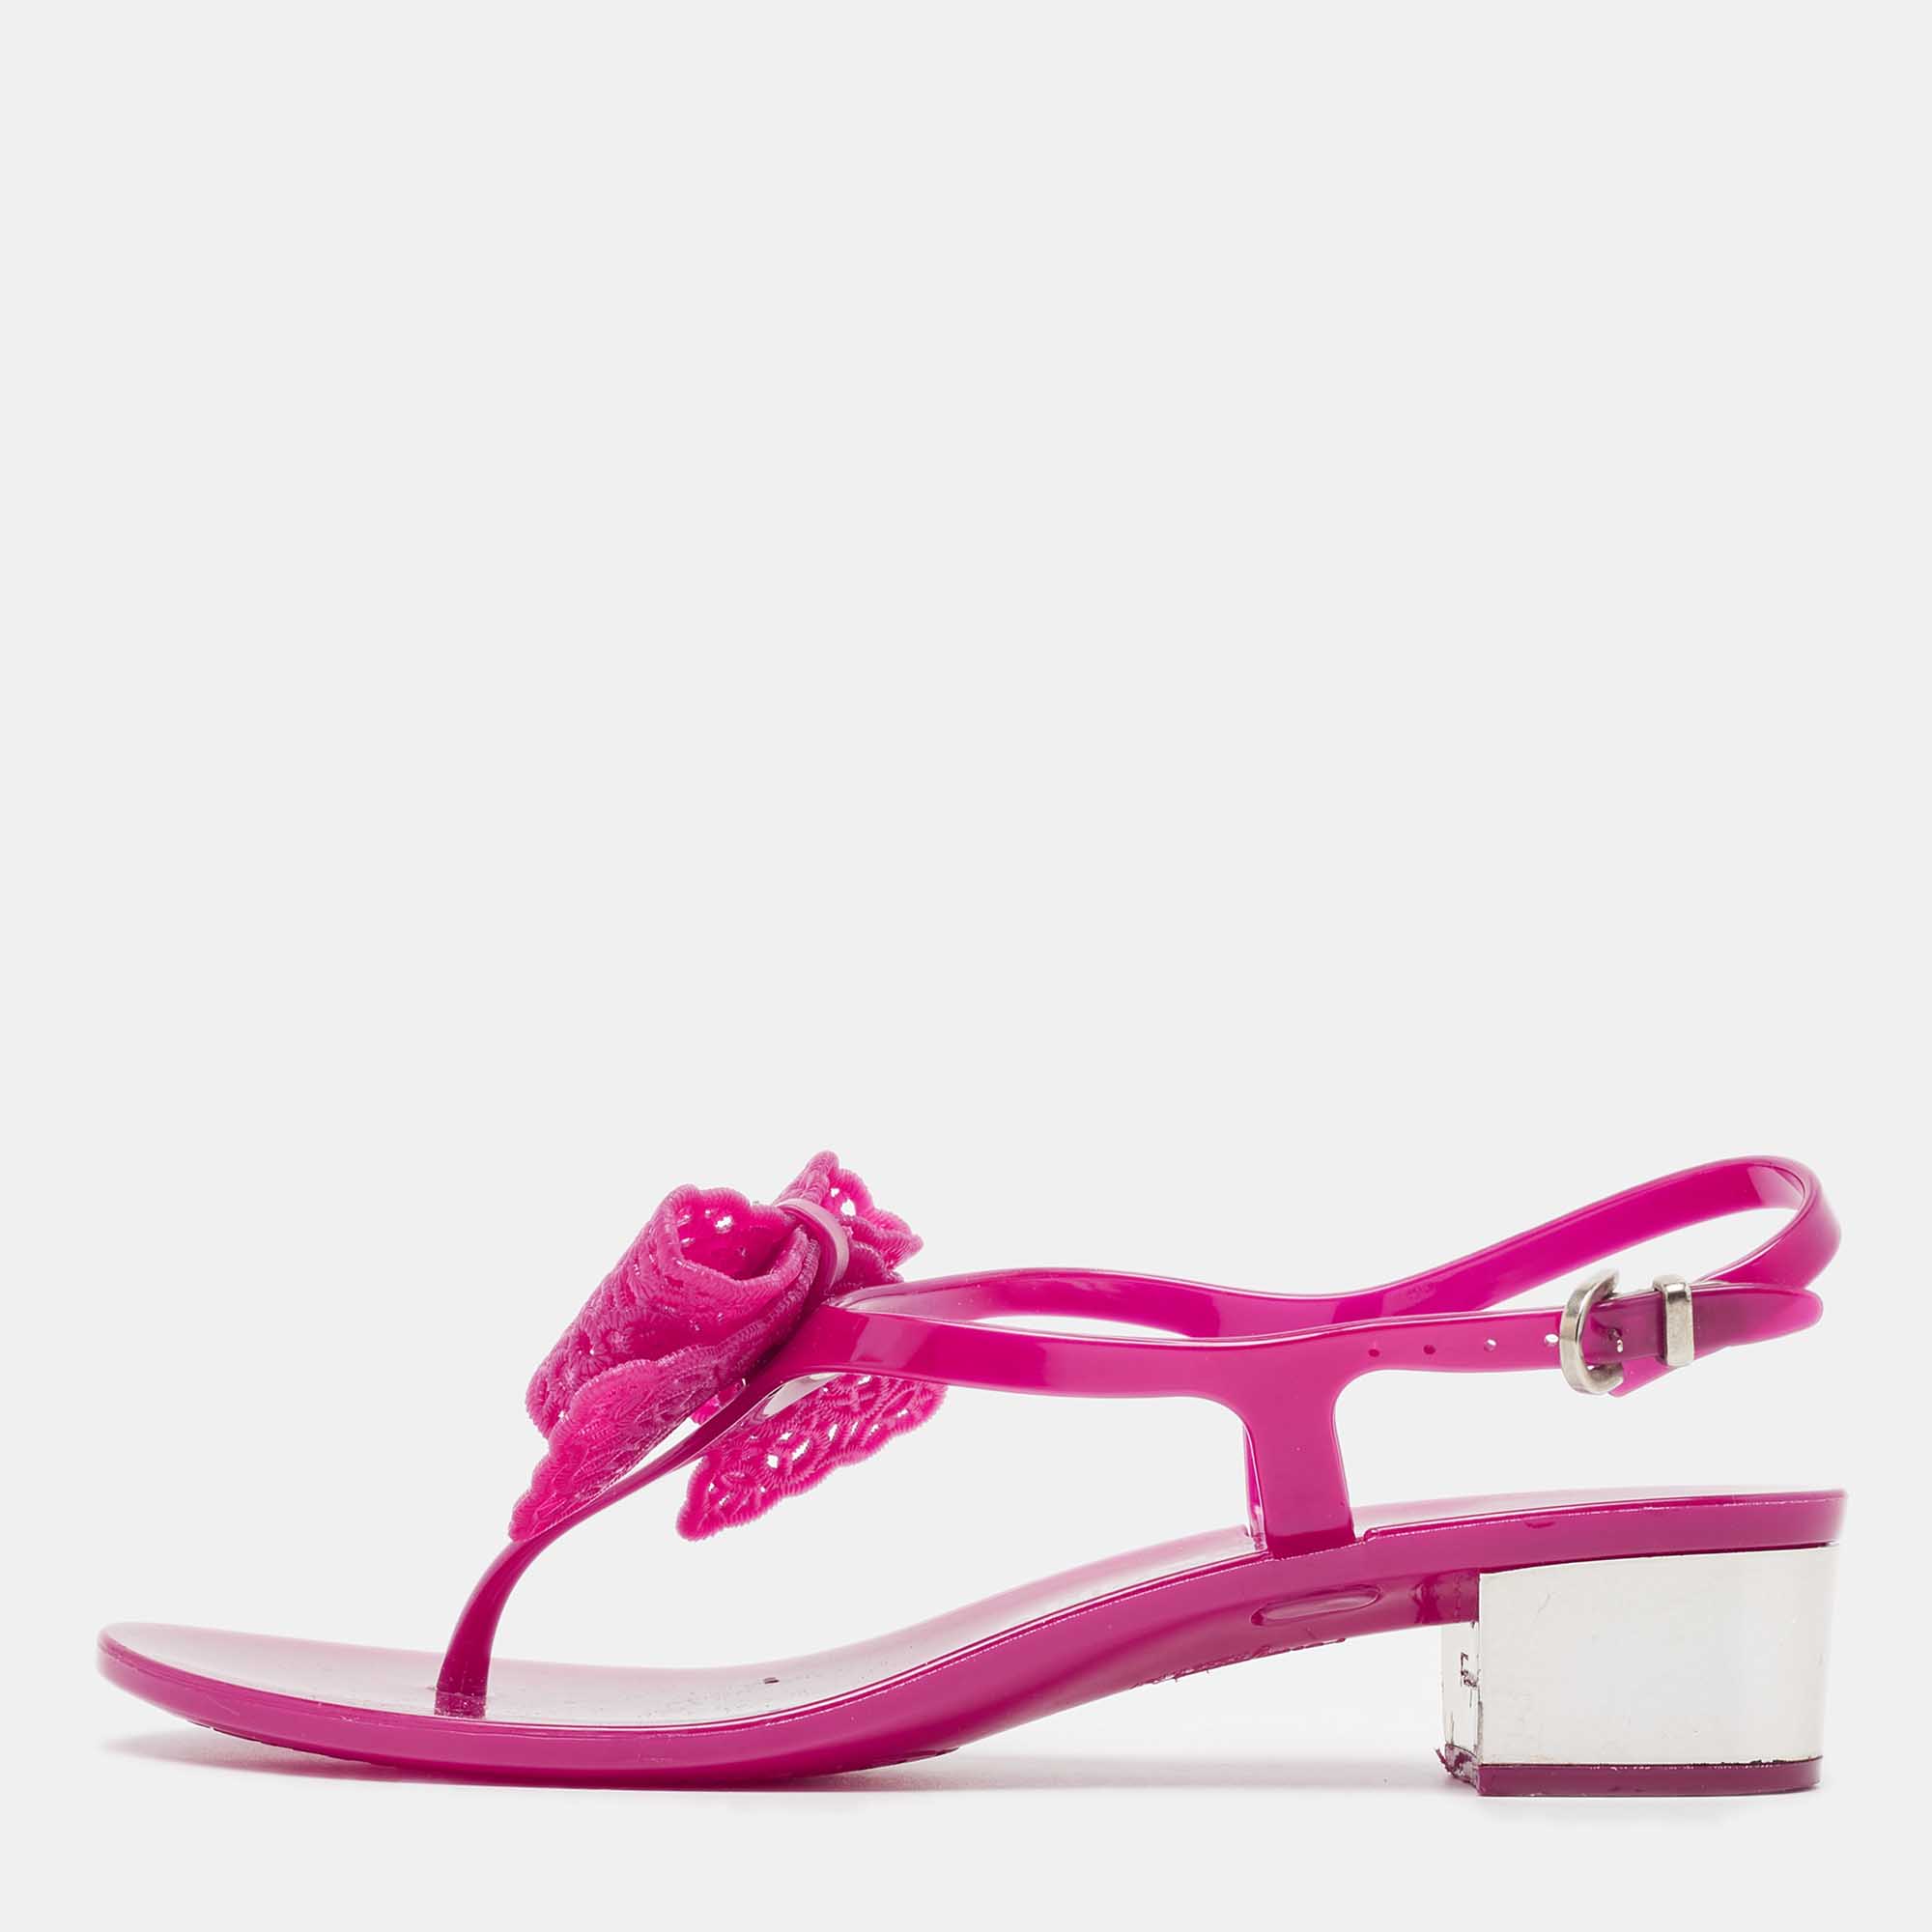 Salvatore ferragamo purple rubber perala thong sandals size 36.5